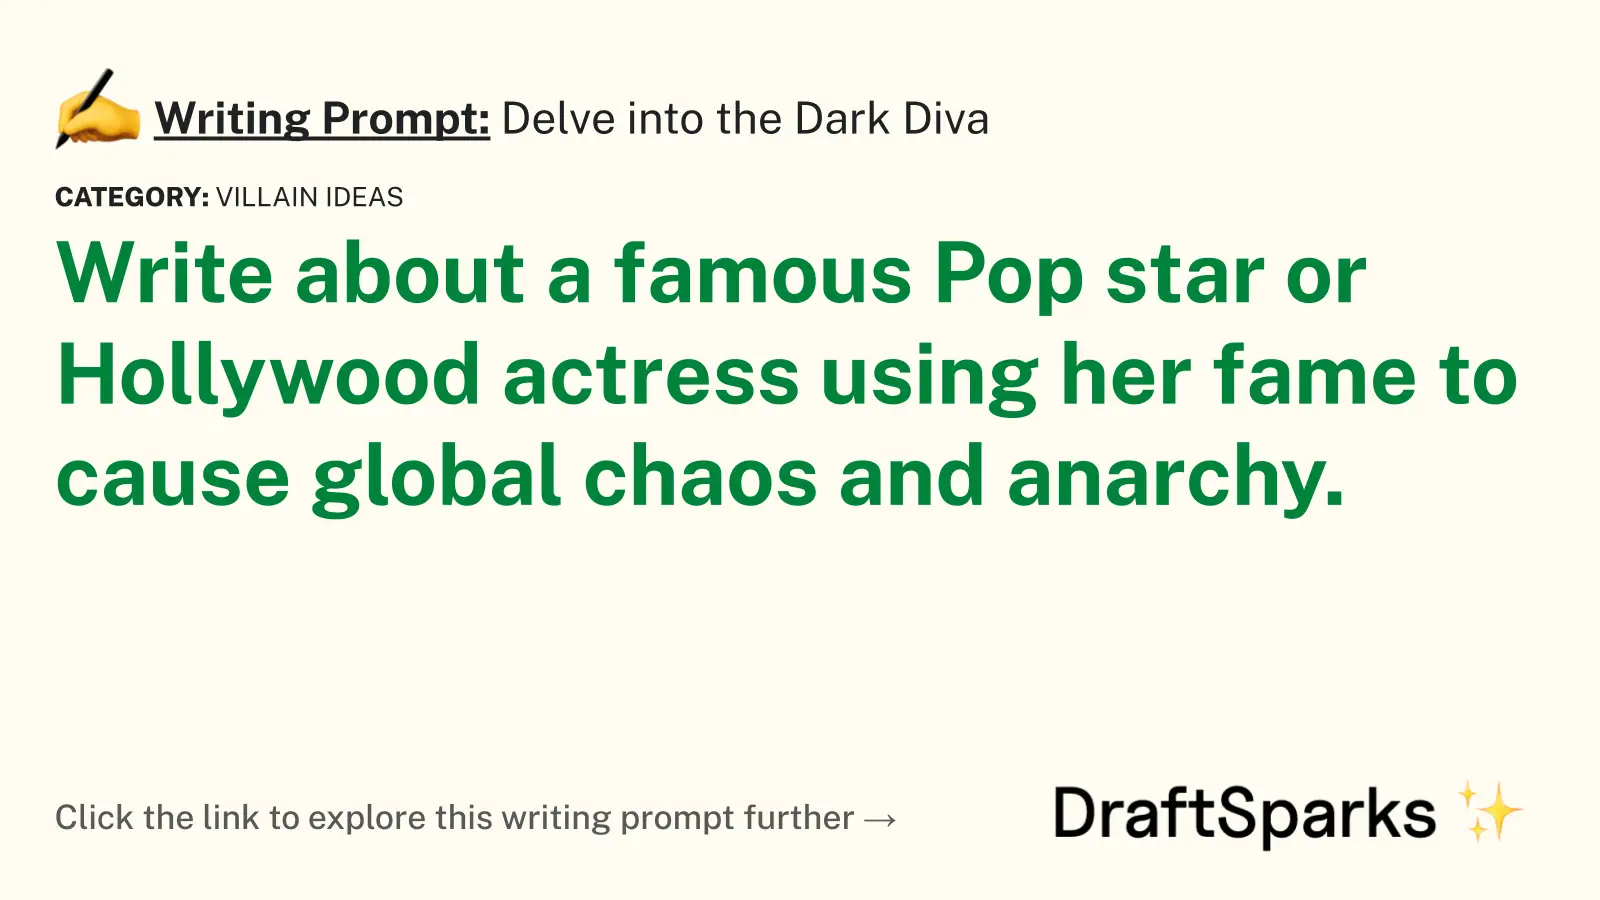 Delve into the Dark Diva